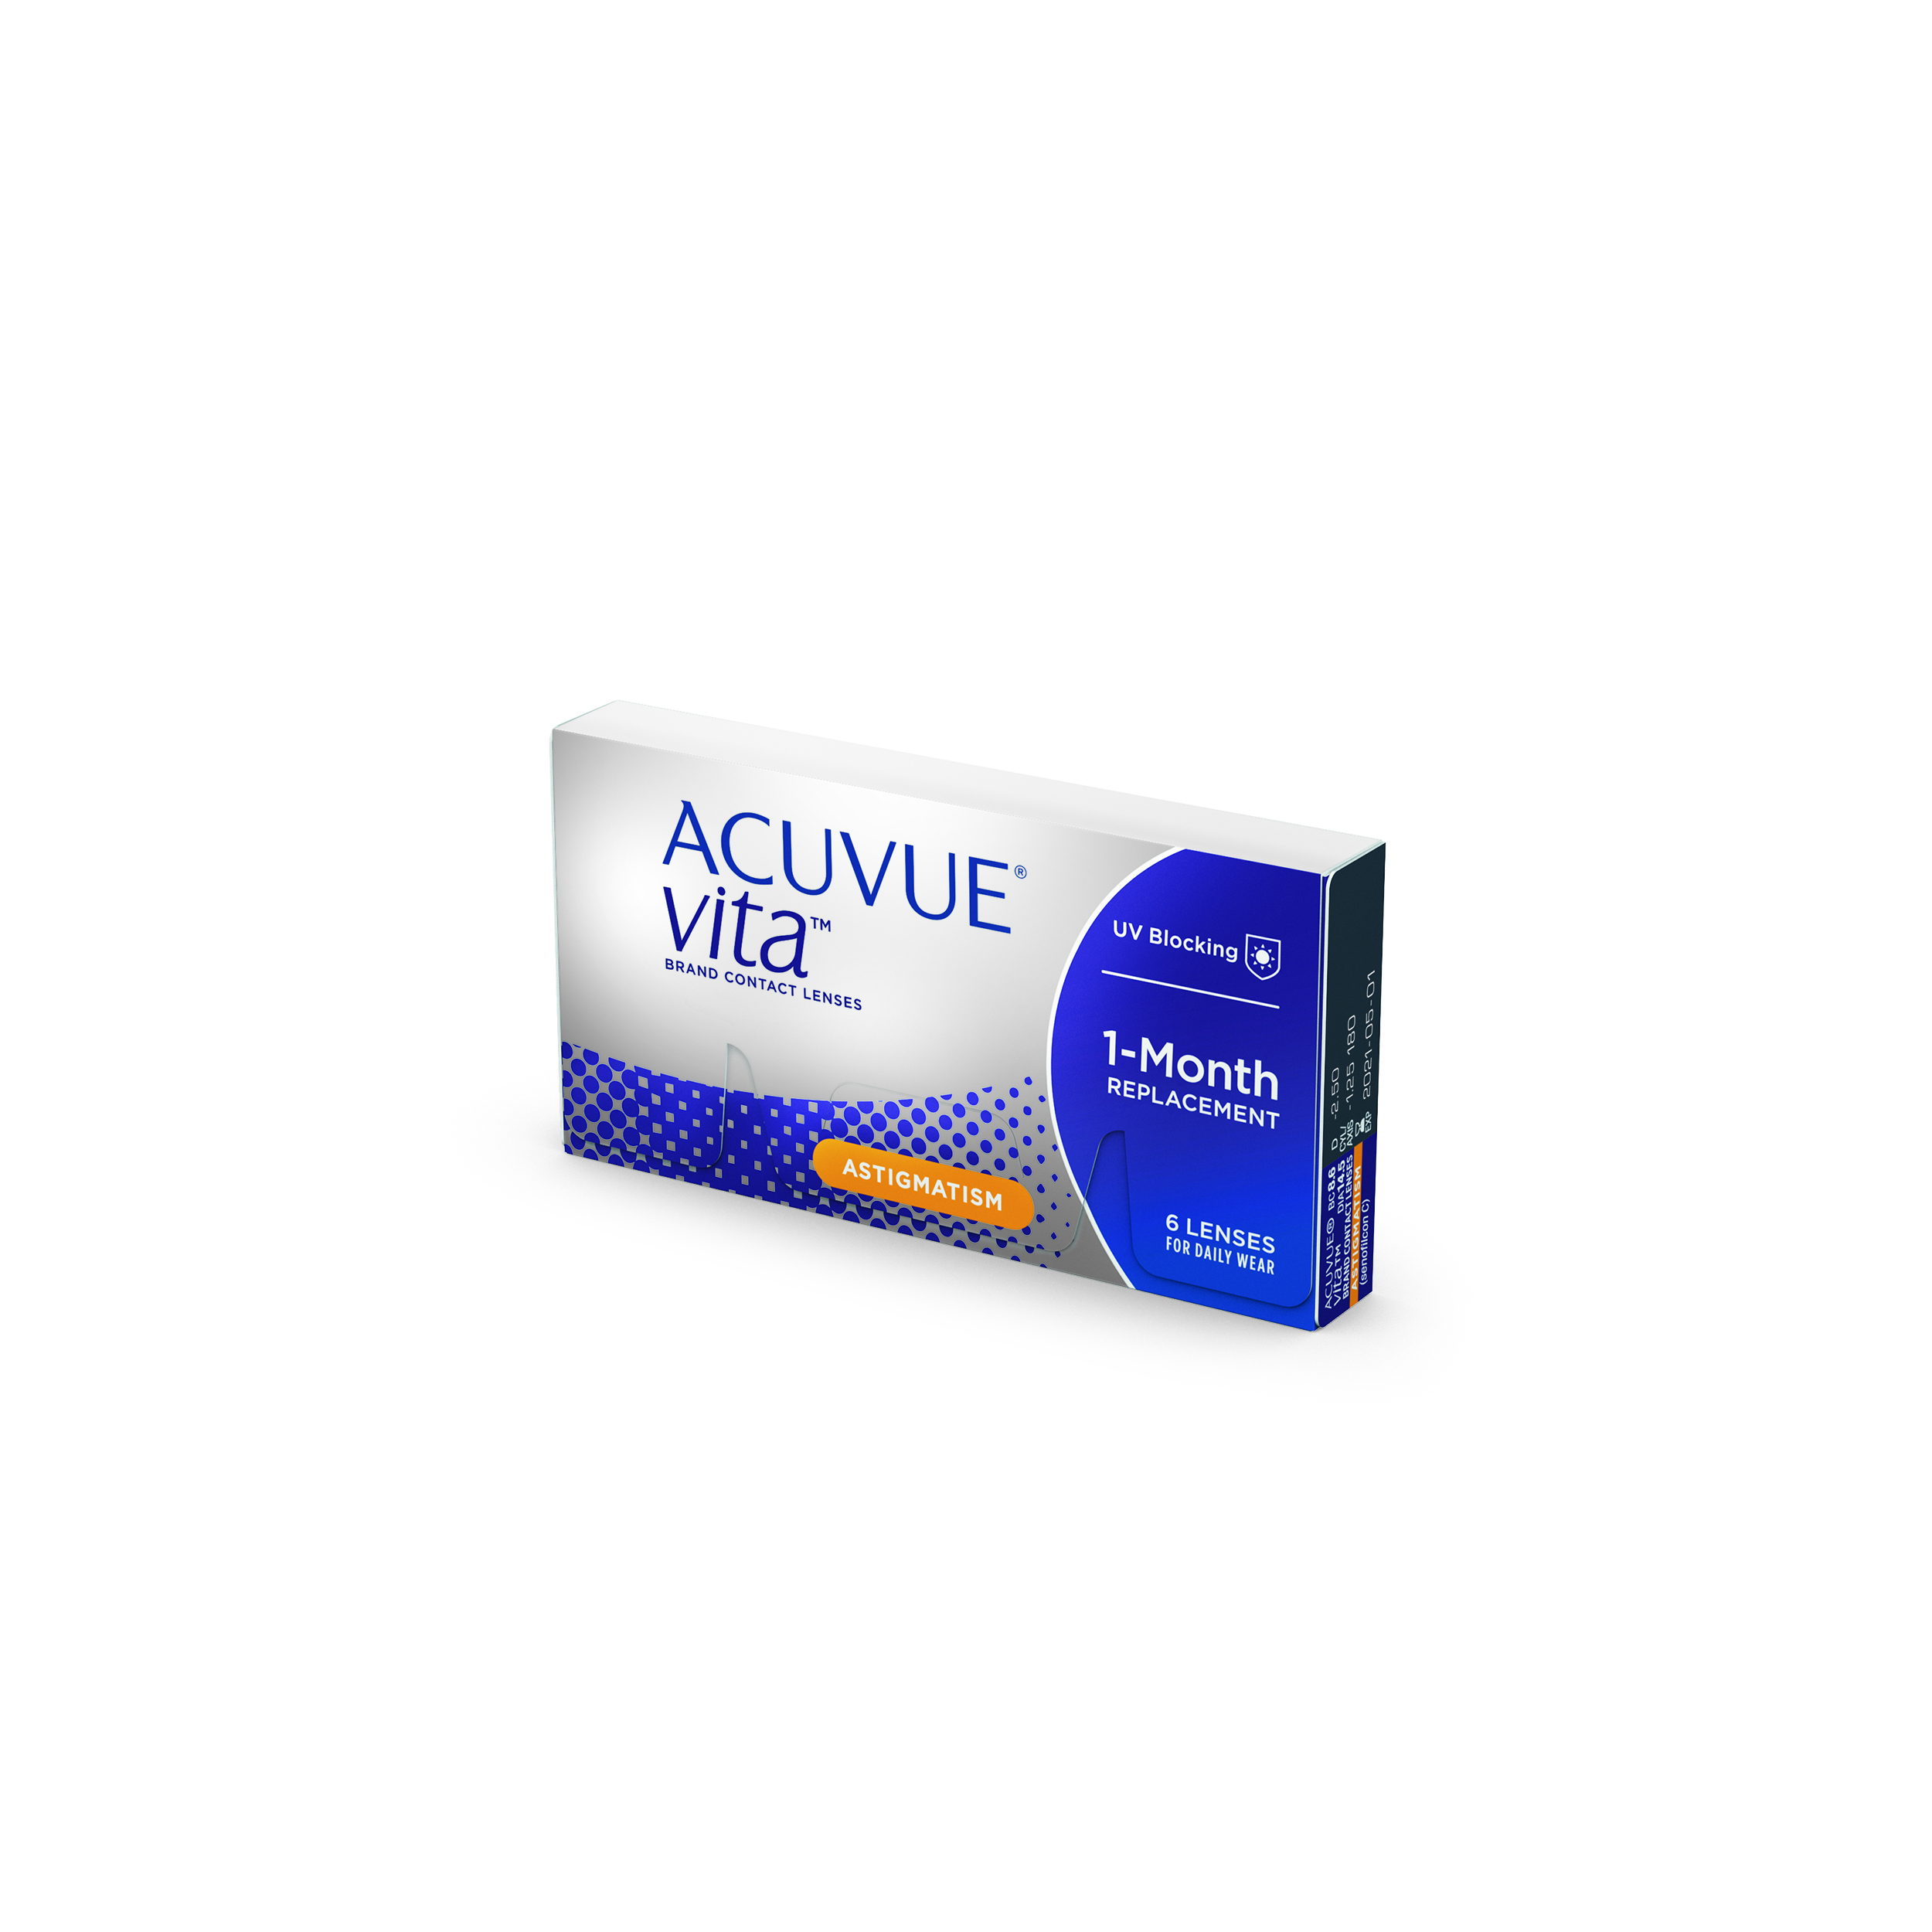 Bewolkt schoorsteen Pluche pop Acuvue Vita for Astigmatism 6 lenzen – Lensfactory B2B